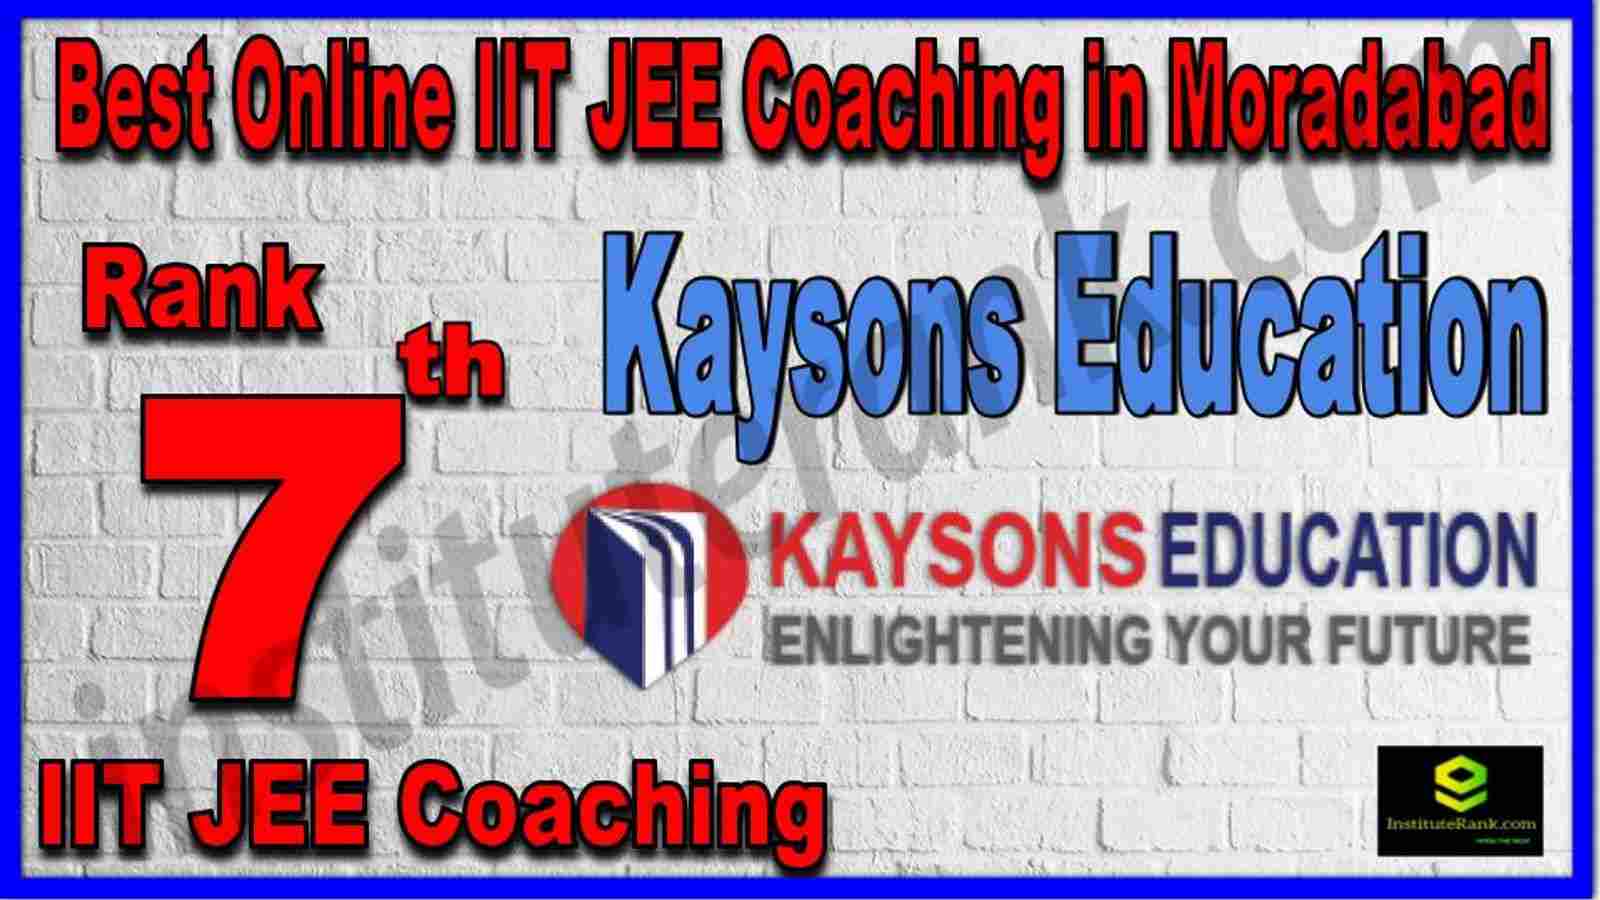 Rank 7th Best Online IIT JEE Coaching in Moradabad